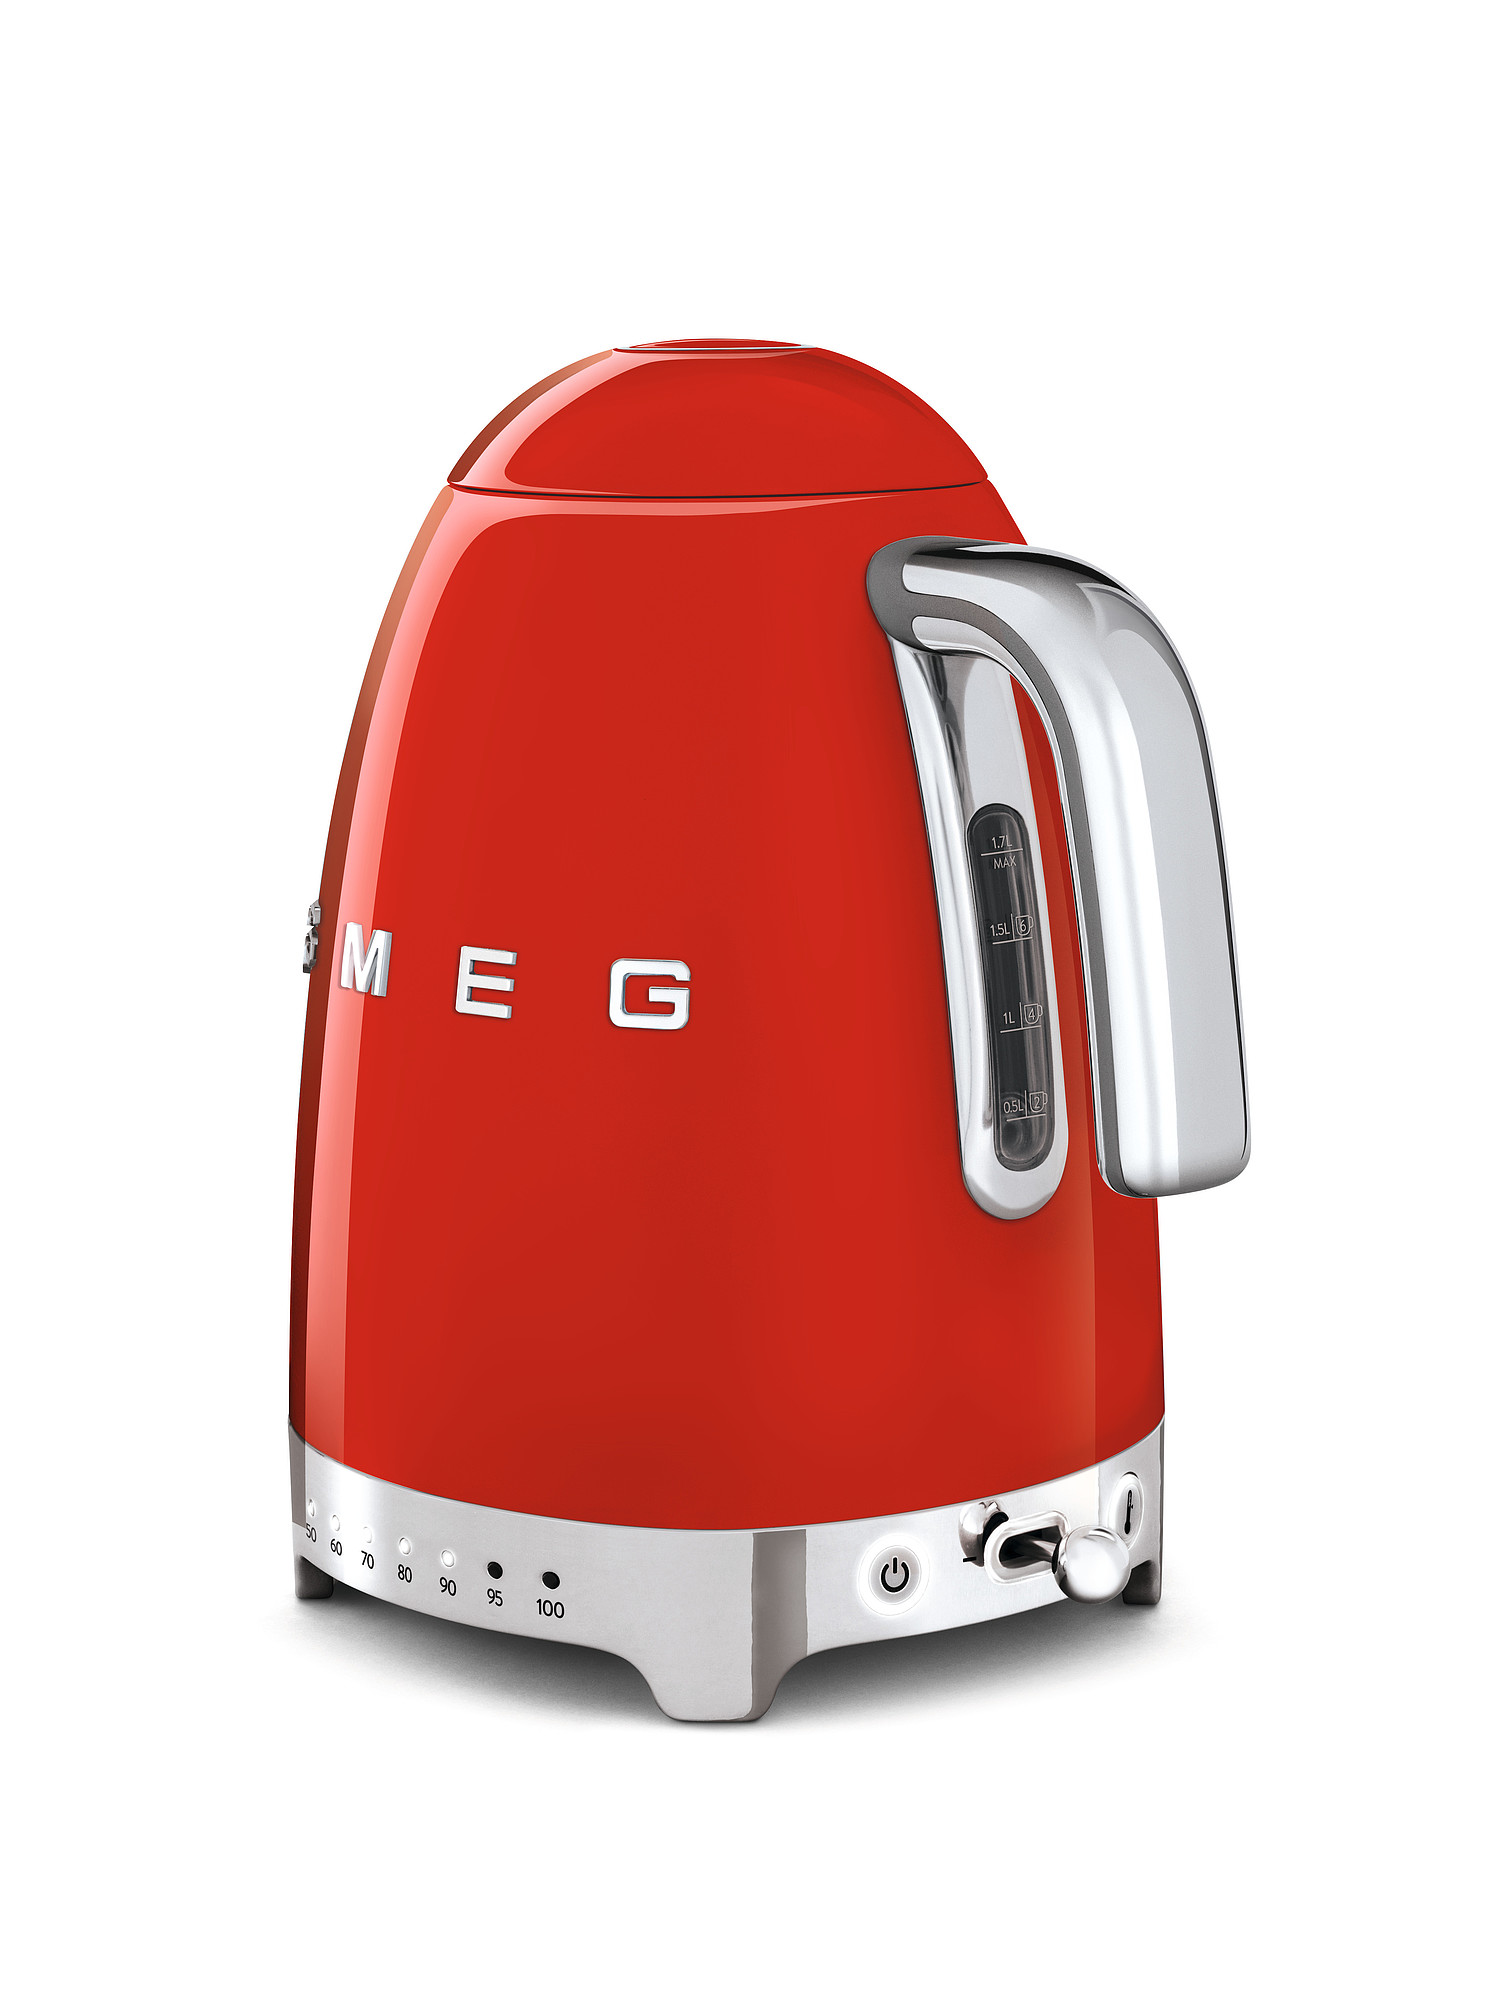 SMEG Wasserkocher mit Temperaturregelung - Toaster Set Rot